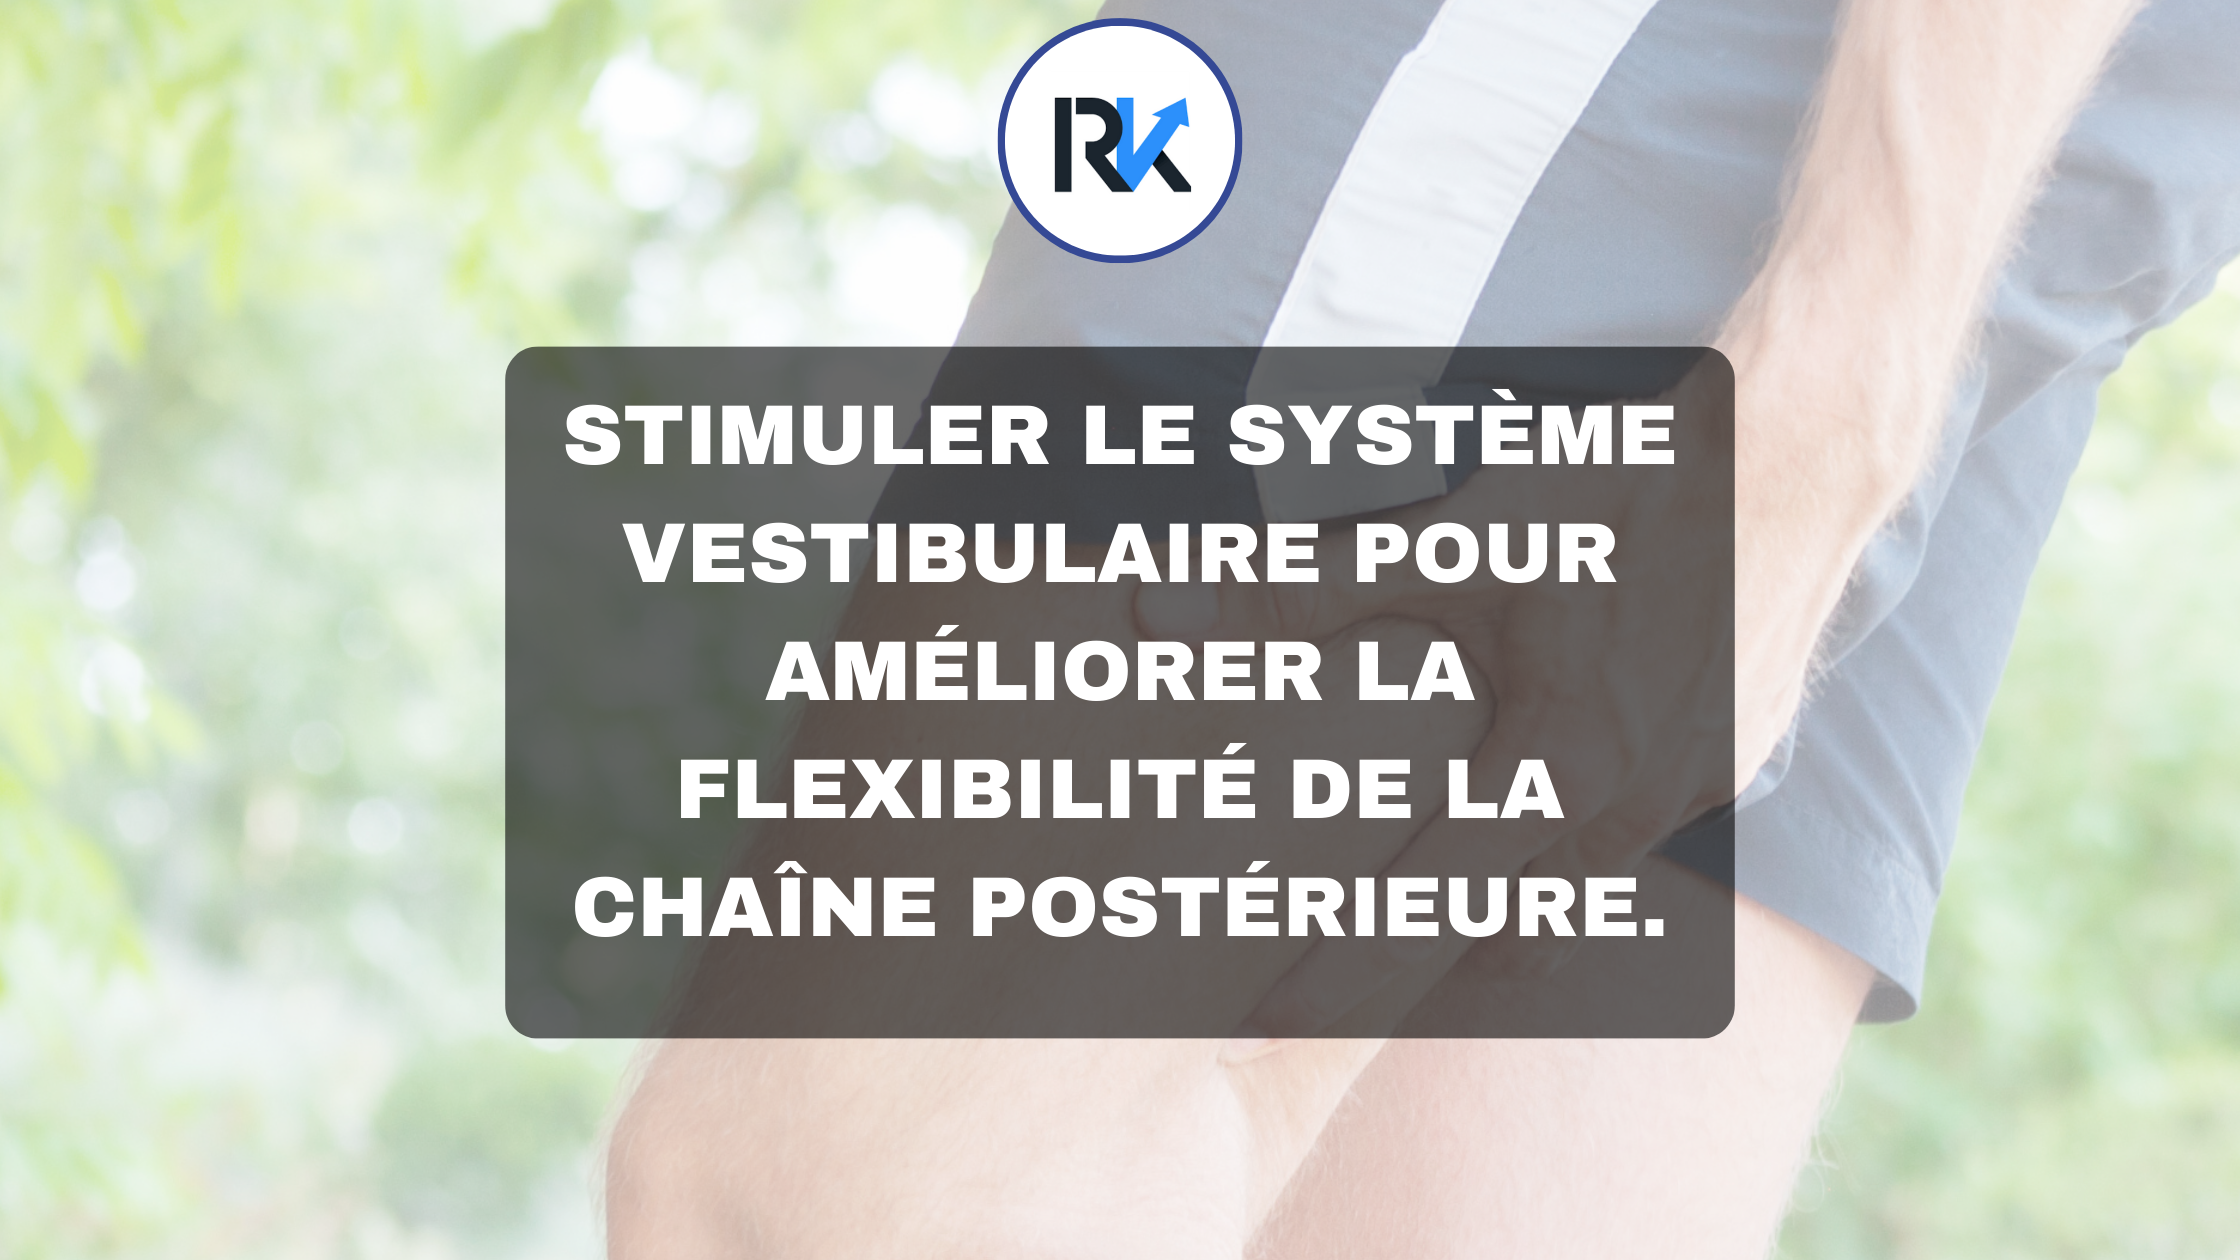 Stimuler le système vestibulaire pour améliorer la flexibilité de la chaîne postérieure.